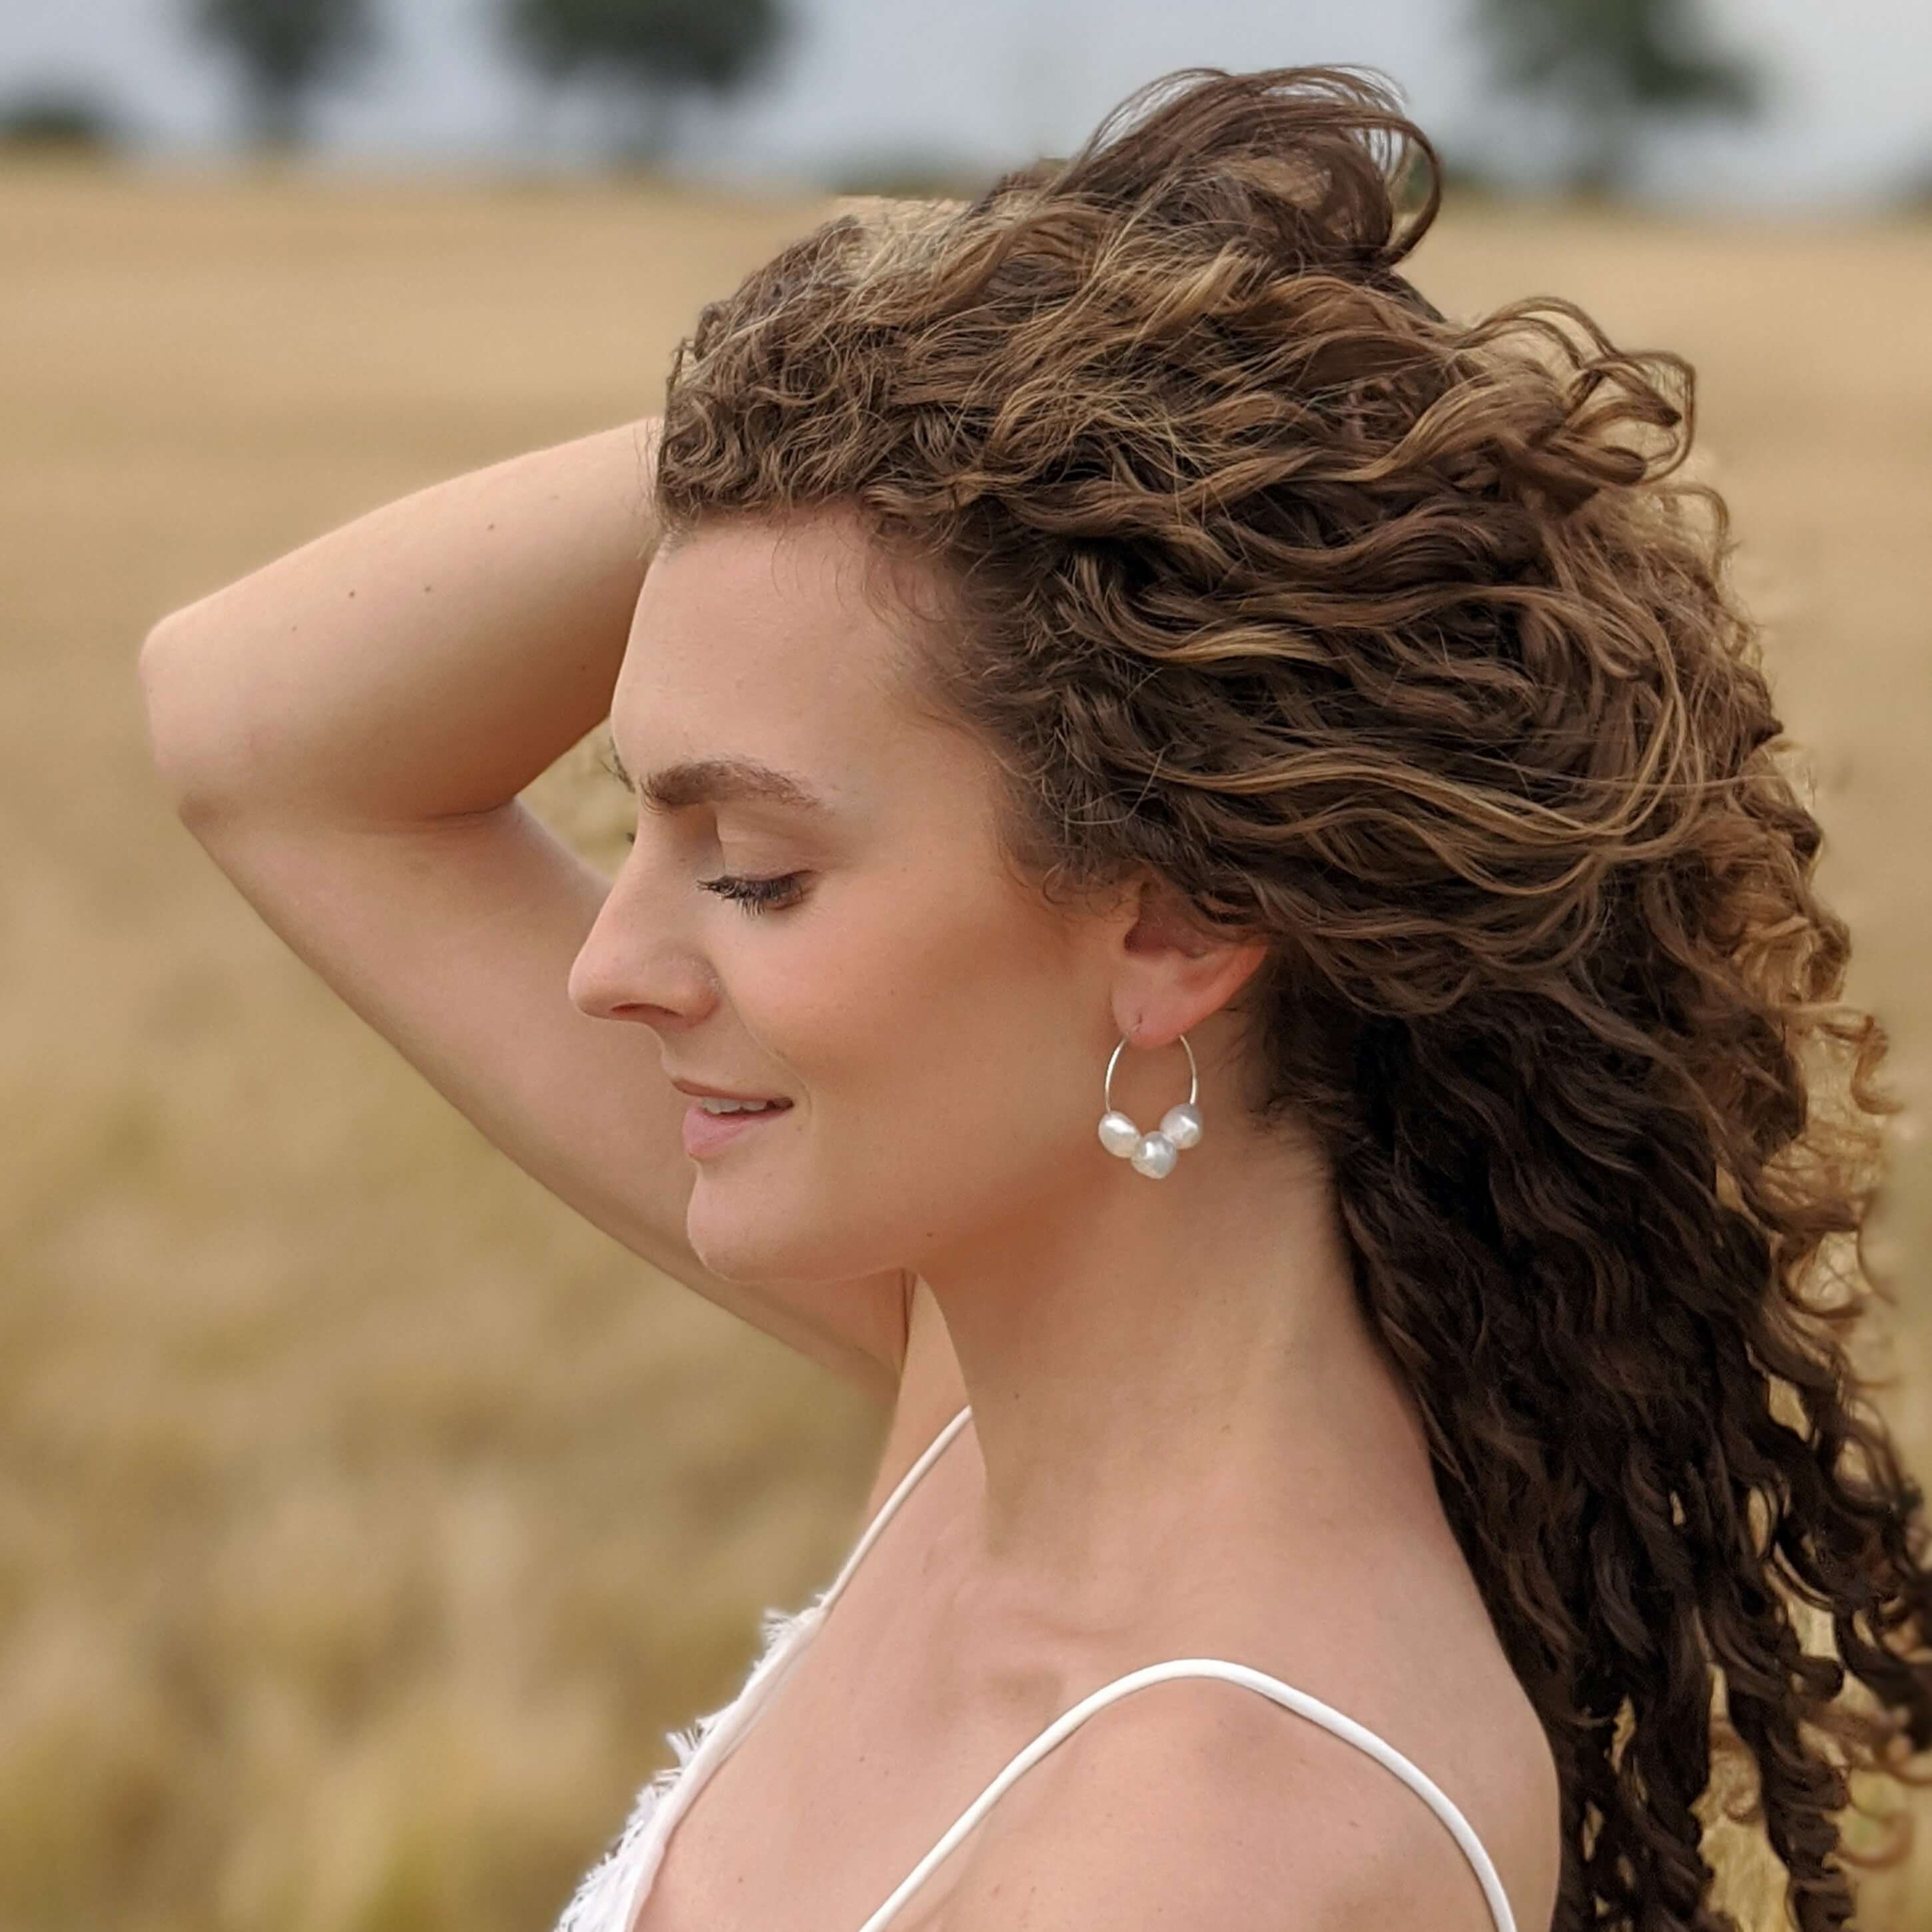 Curly hair model with pearl wire hoop earrings